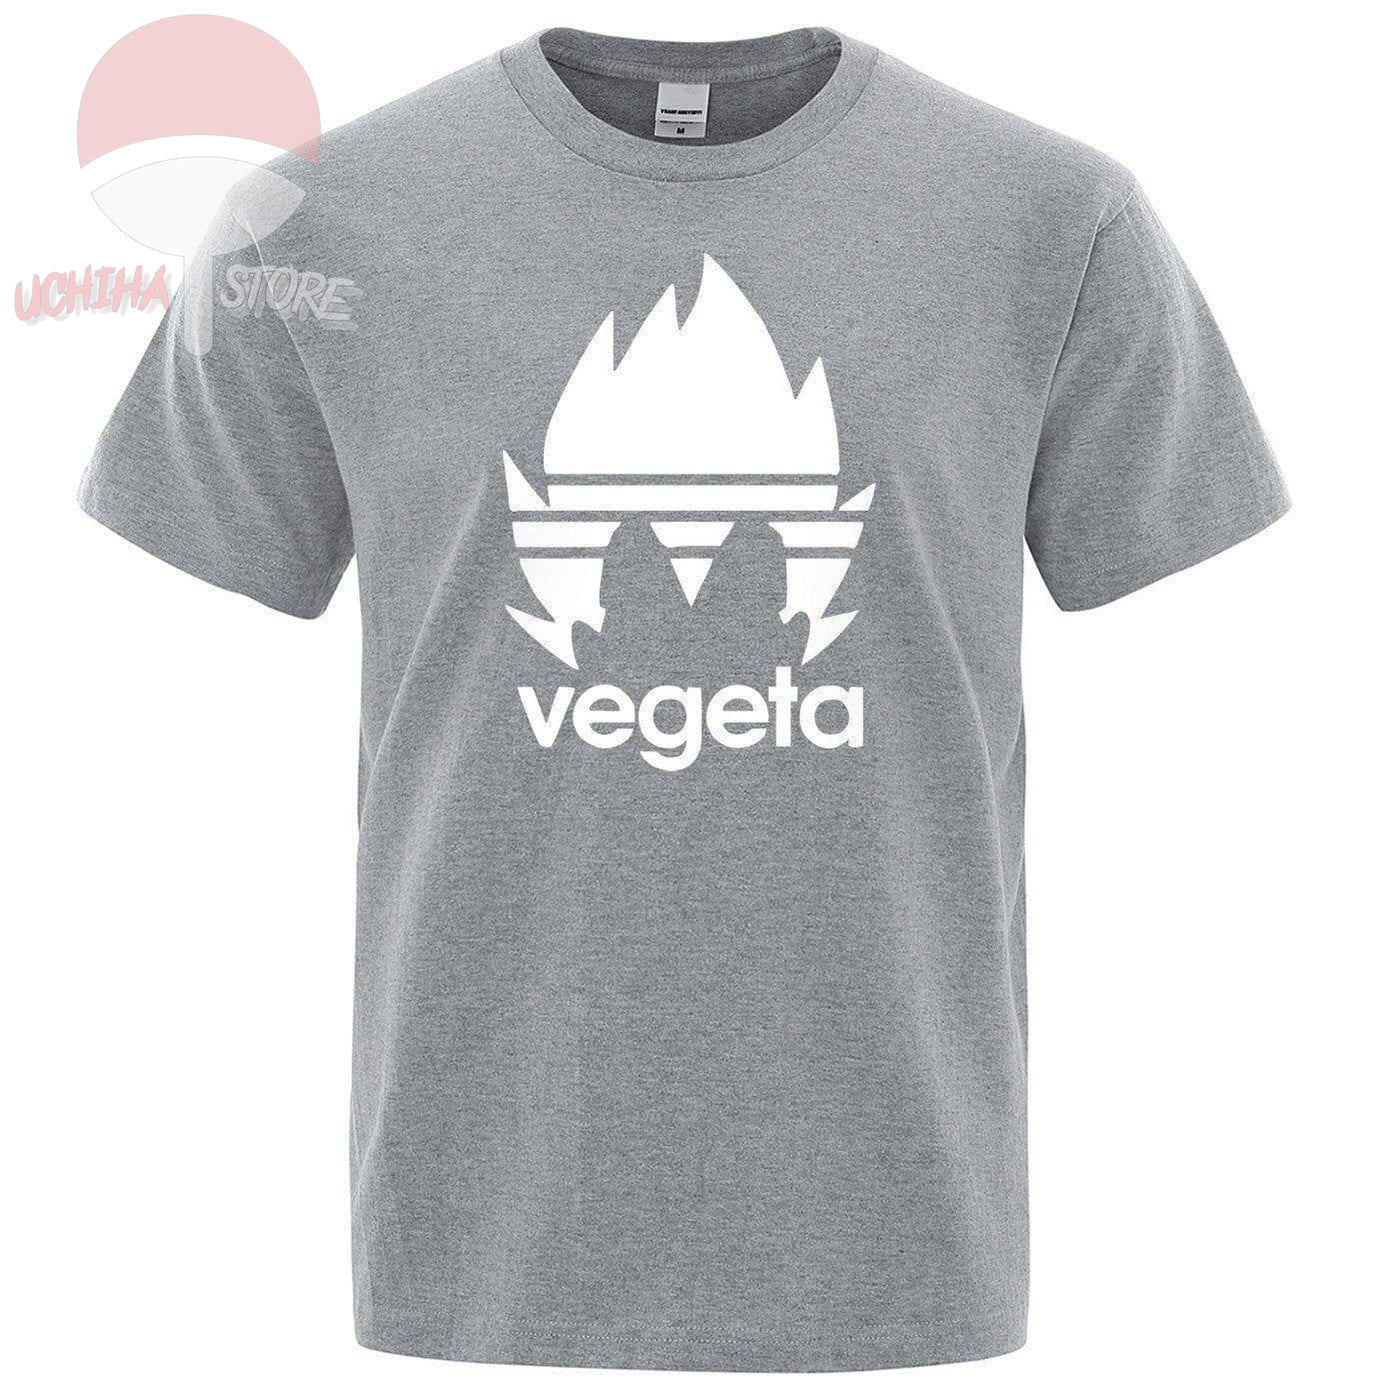 Vegeta T-shirt - Uchiha Store